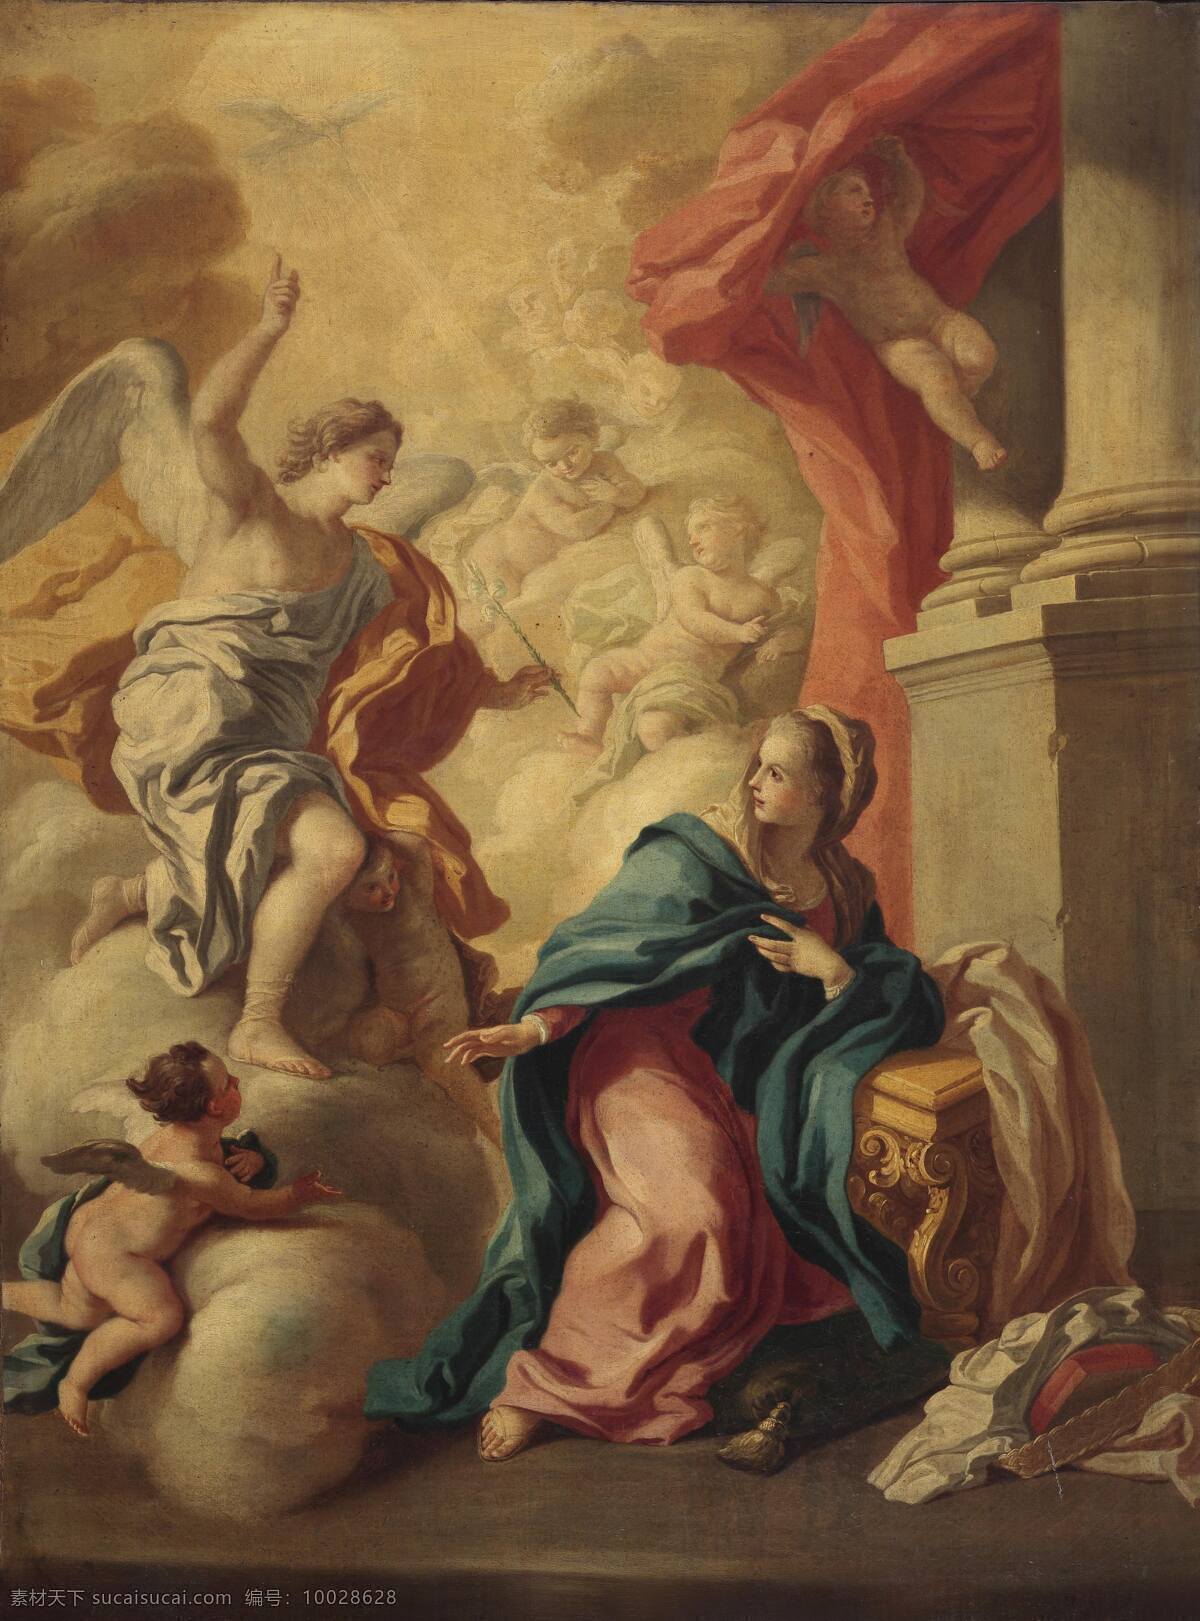 古典油画 怀孕 绘画书法 天使 文化艺术 油画 预告 天使报喜 那不勒斯学院 18世纪 圣母玛丽娅 圣婴即将到来 装饰素材